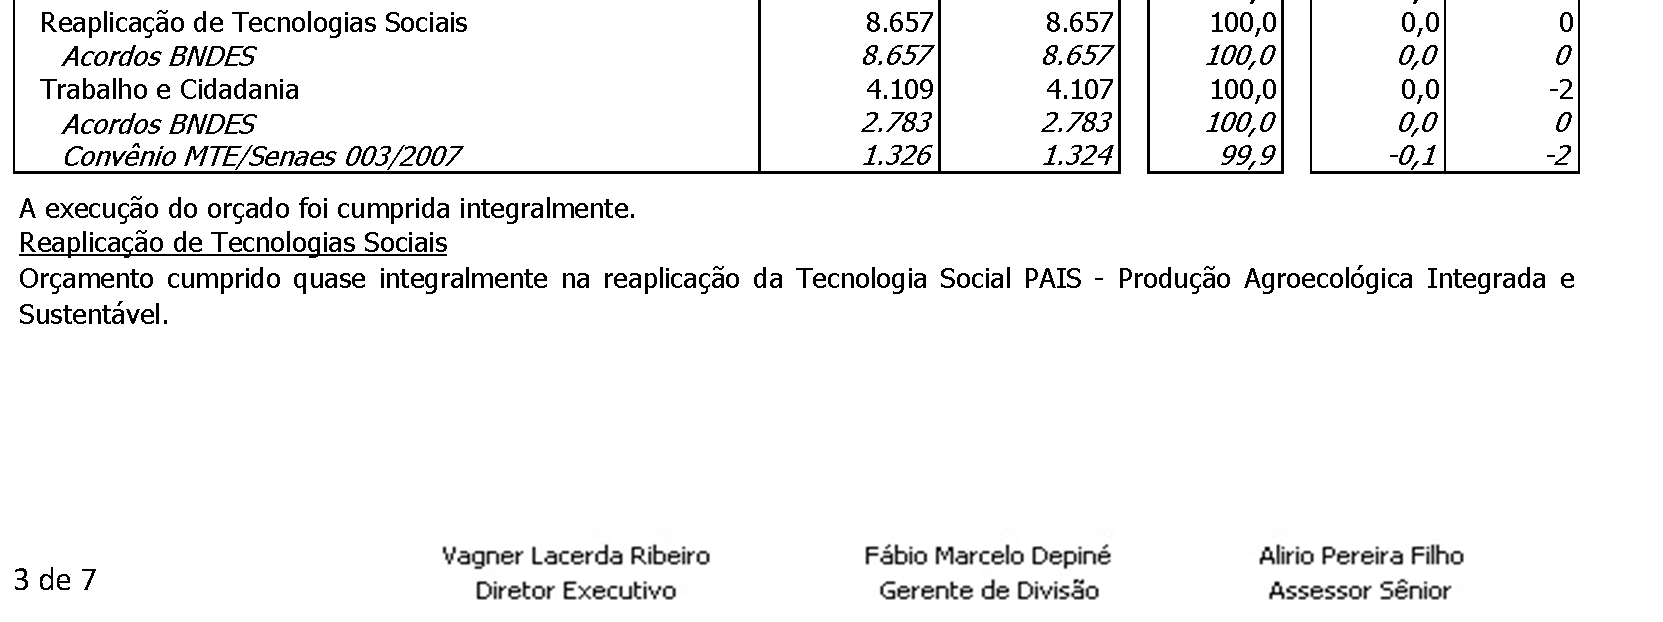 Outras Receitas Houve sub-realização nas captações junto a Empresas e Conselheiros devido a ausência de repasse de patrocínio pela Petrobras neste exercício, tendo sido prorrogado para o próximo ano.